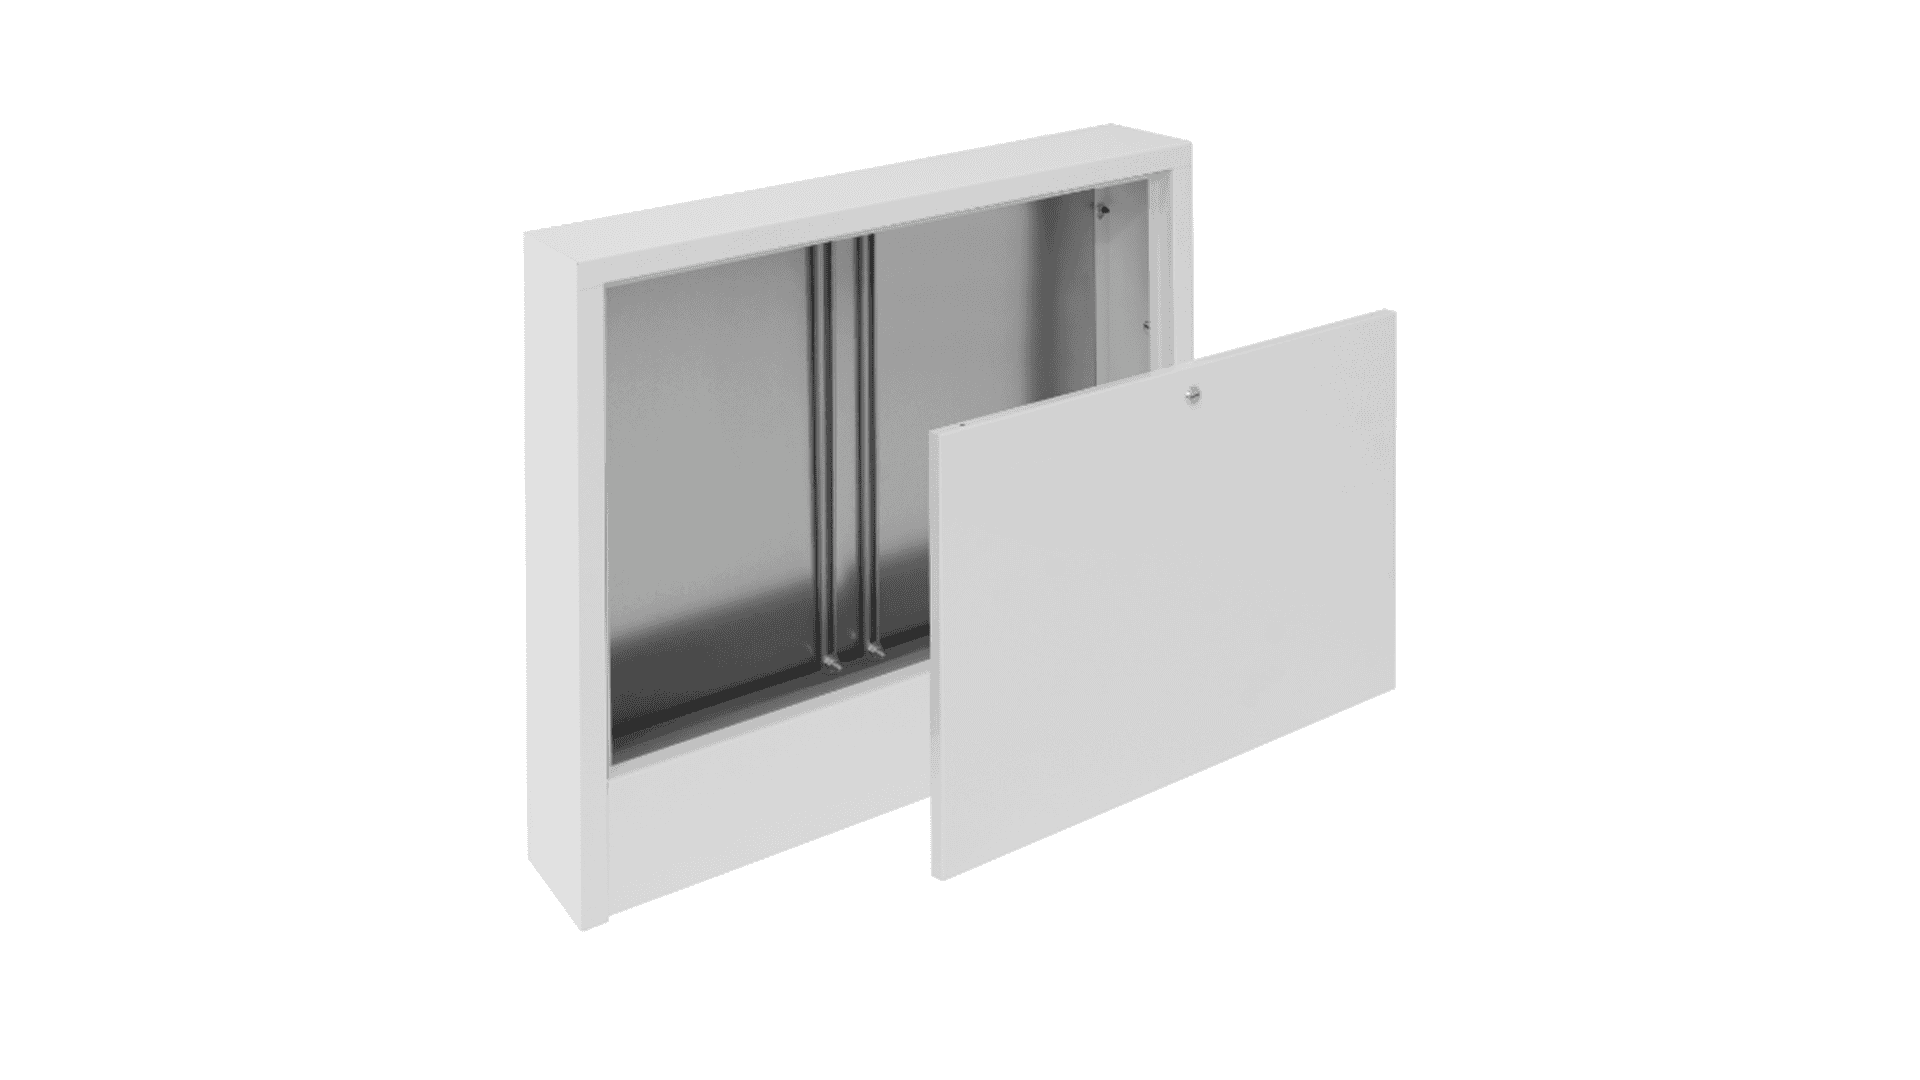 KAN-therm - Instalační skříně Slim a Slim+ - Skřínka pro instalaci na stěně SWNE pro topné instalace a instalace pitné/užitkové vody